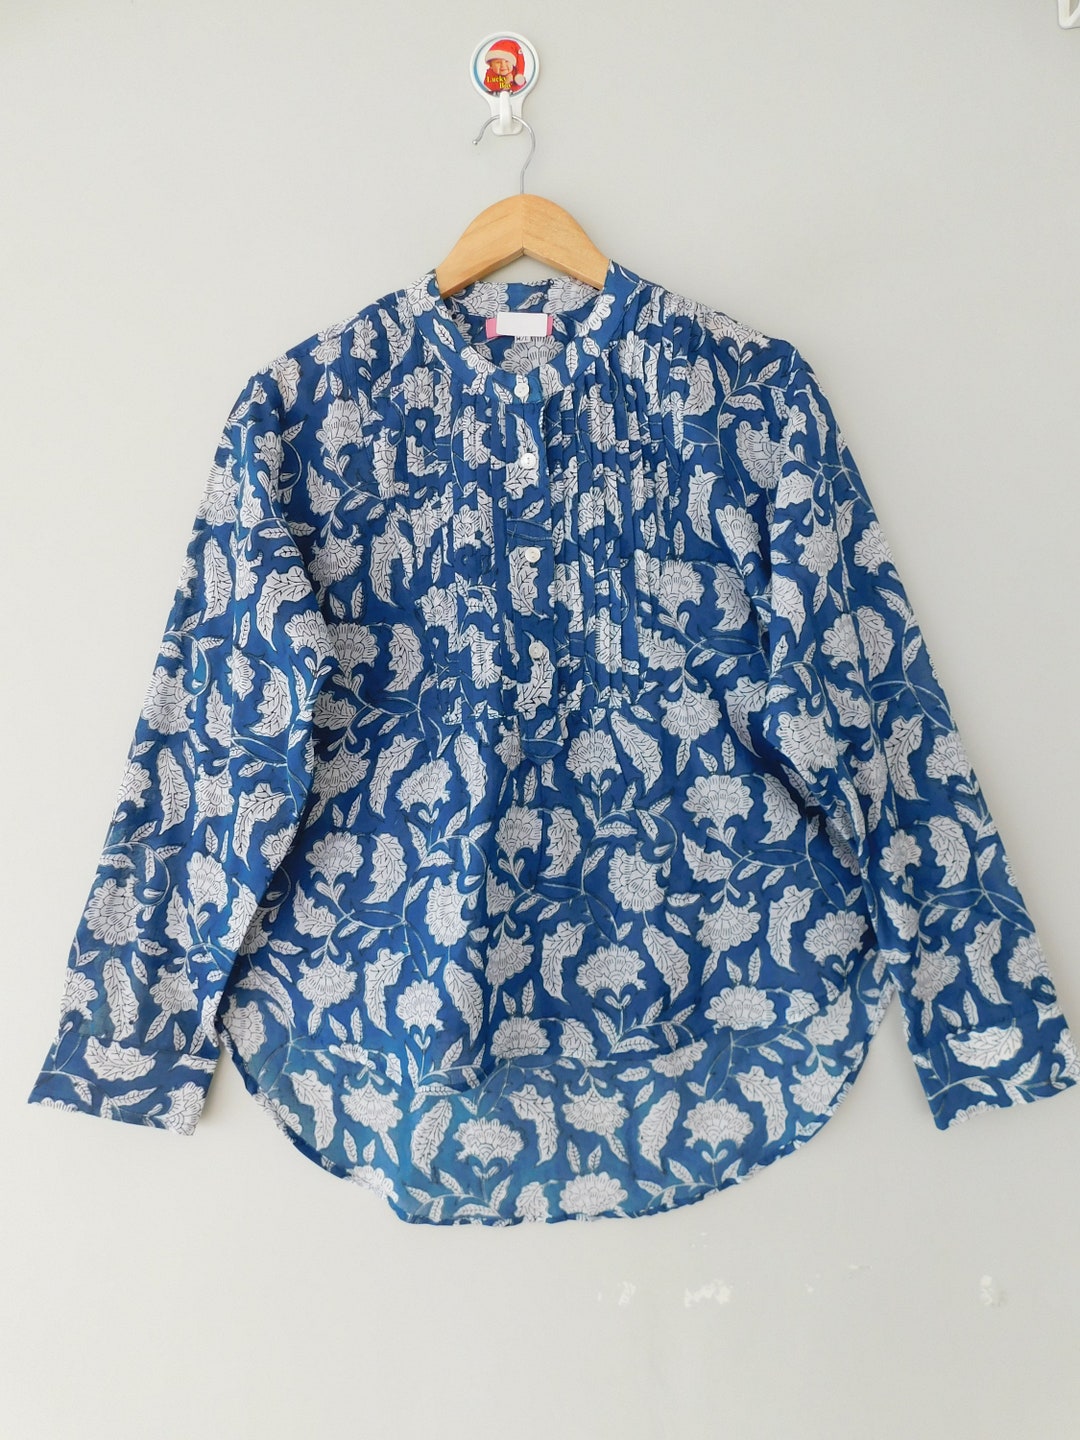 Blue Floral Print Cotton Shirt, Peter Pan Pintuck Short Blouse Summer ...